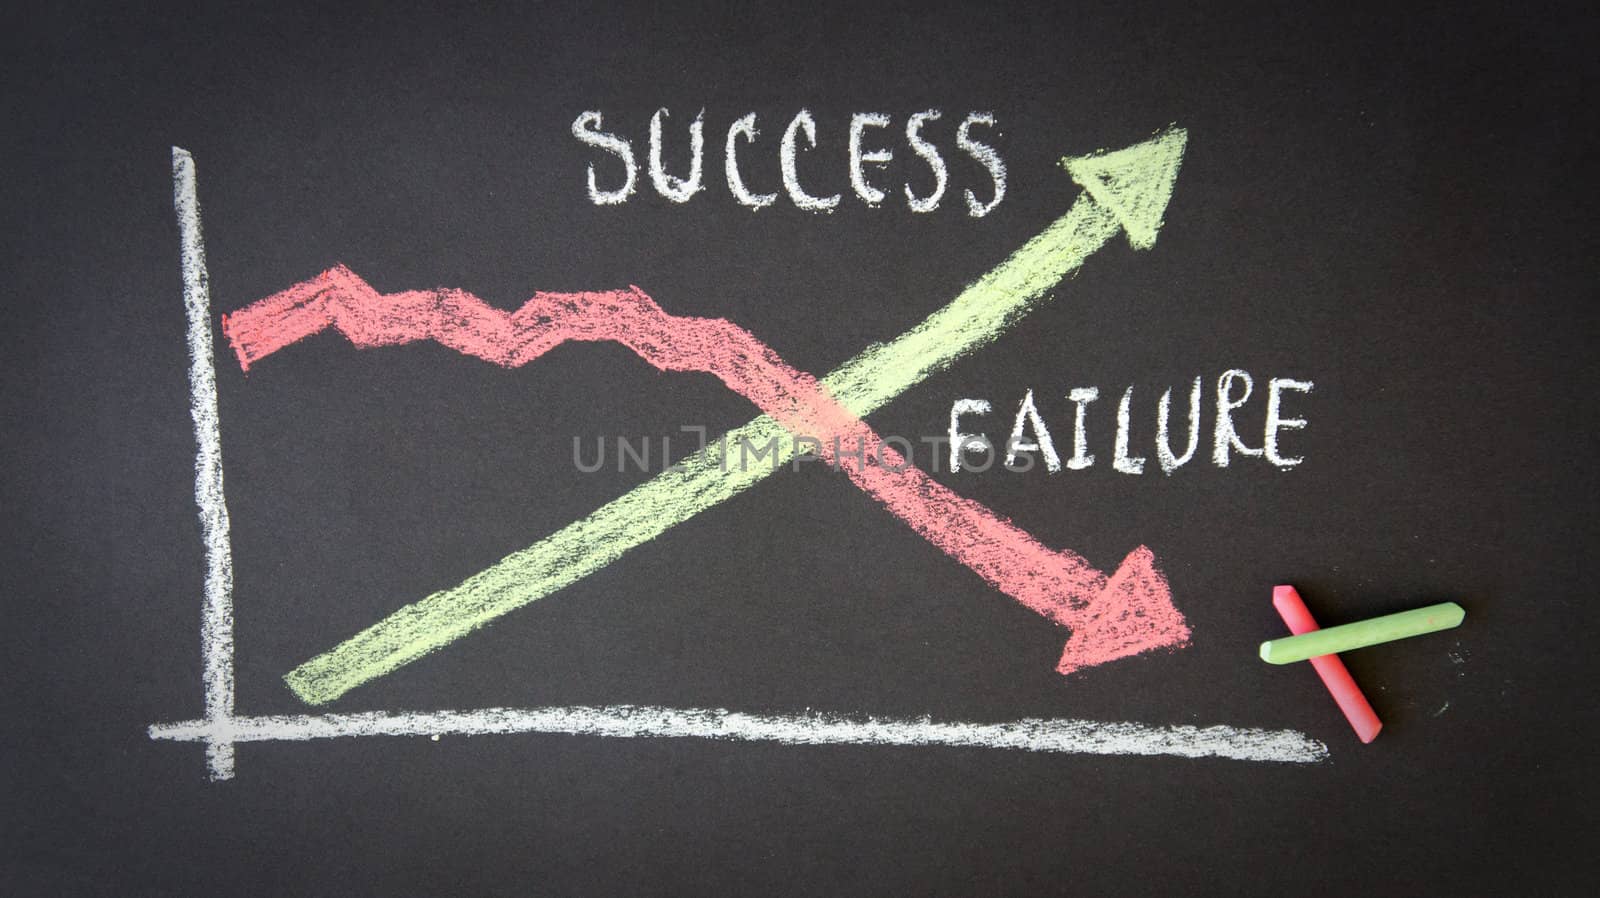 Success Failure Diagram by kbuntu